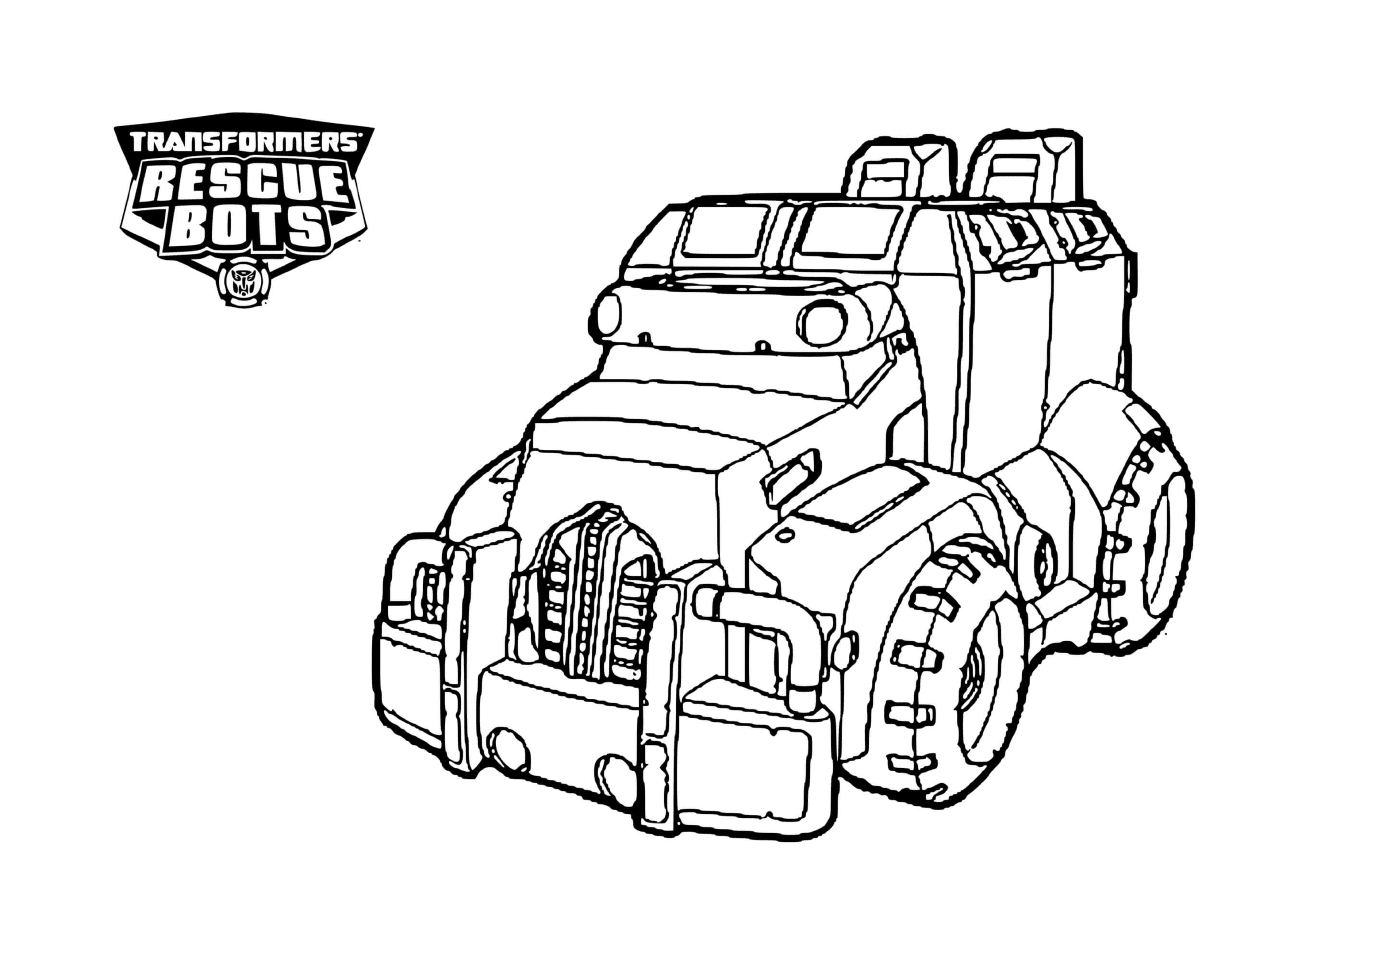  Transformers de carro bots de resgate 